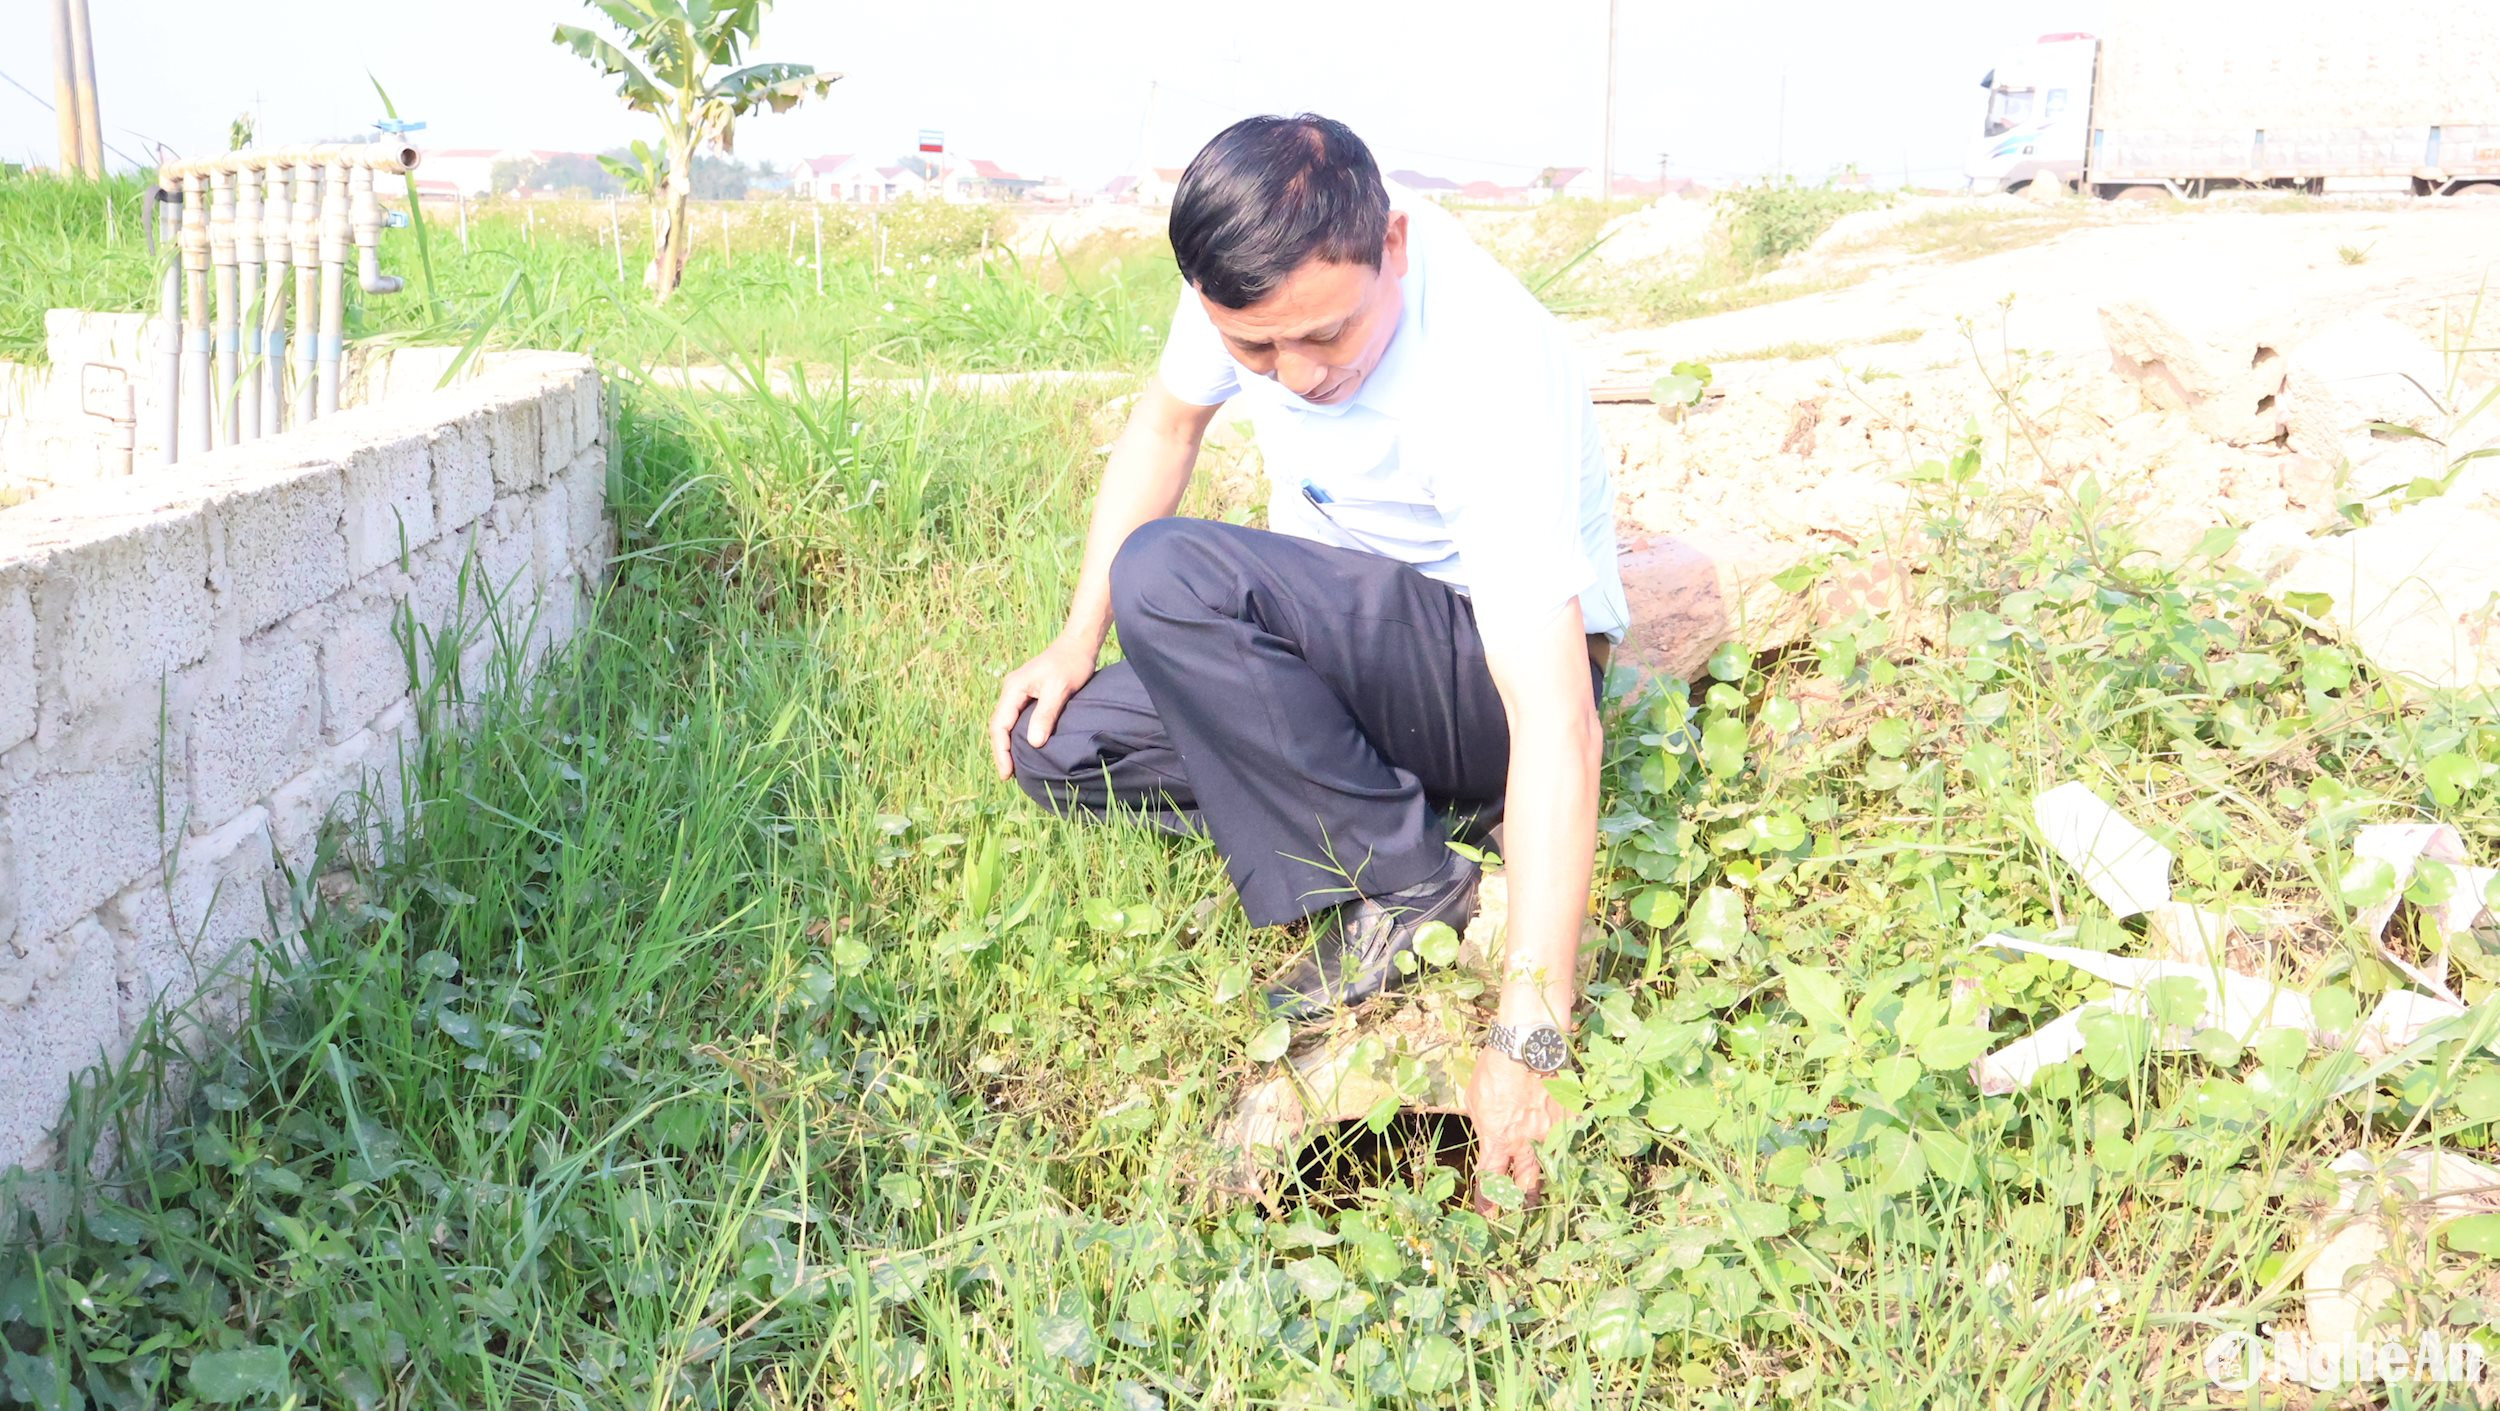 Ông Hồ Diên Vỹ, Phó Chủ tịch UBND xã Quỳnh Minh (Quỳnh Lưu) cho biết, cống thoát nước quá nhỏ nên không đáp ứng việc tiêu thoát nước cho vùng sản xuất rau màu. Ảnh Việt Hùng